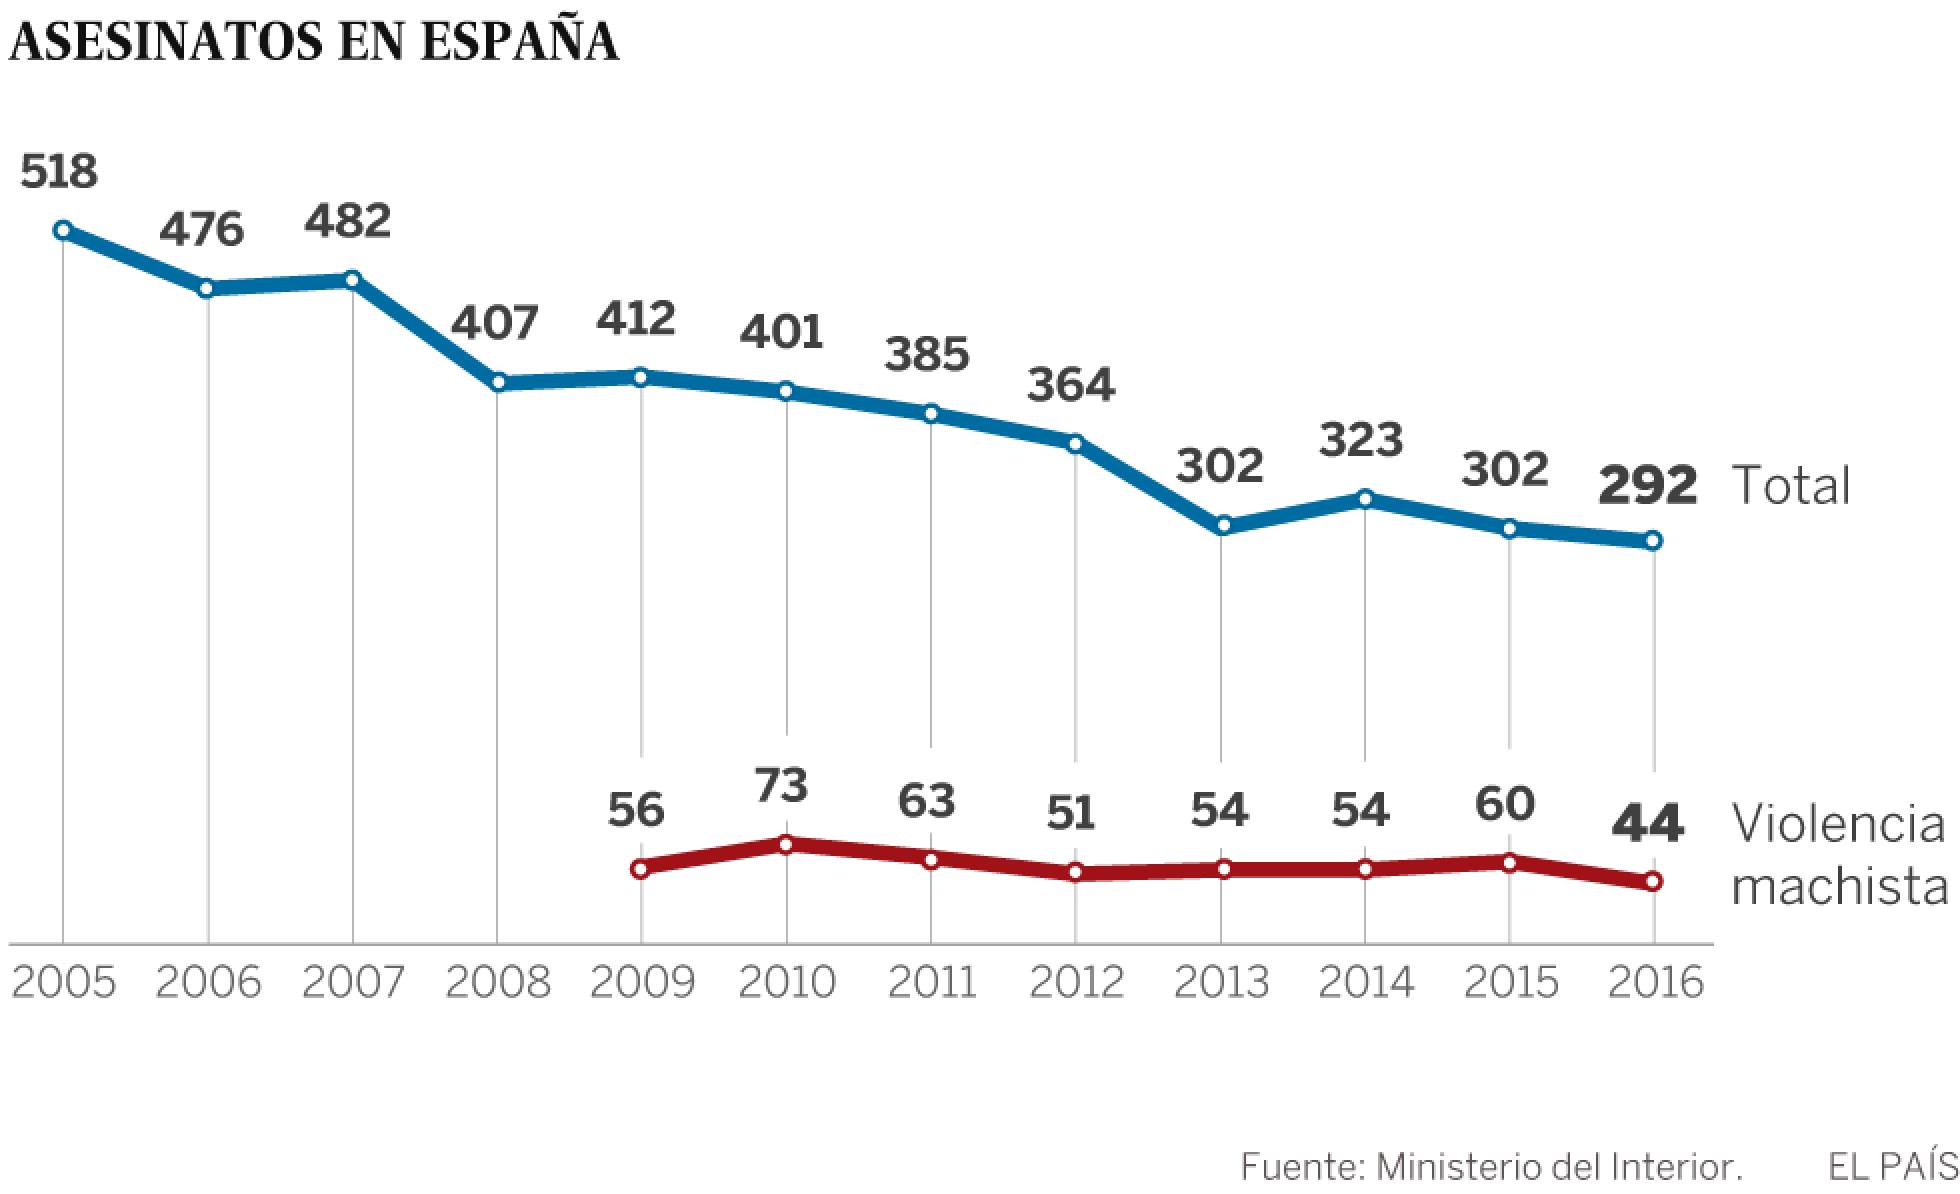 Asesinatos, suicidios y violencia machista en España. 1487070105_593613_1487086169_noticia_normal_recorte1